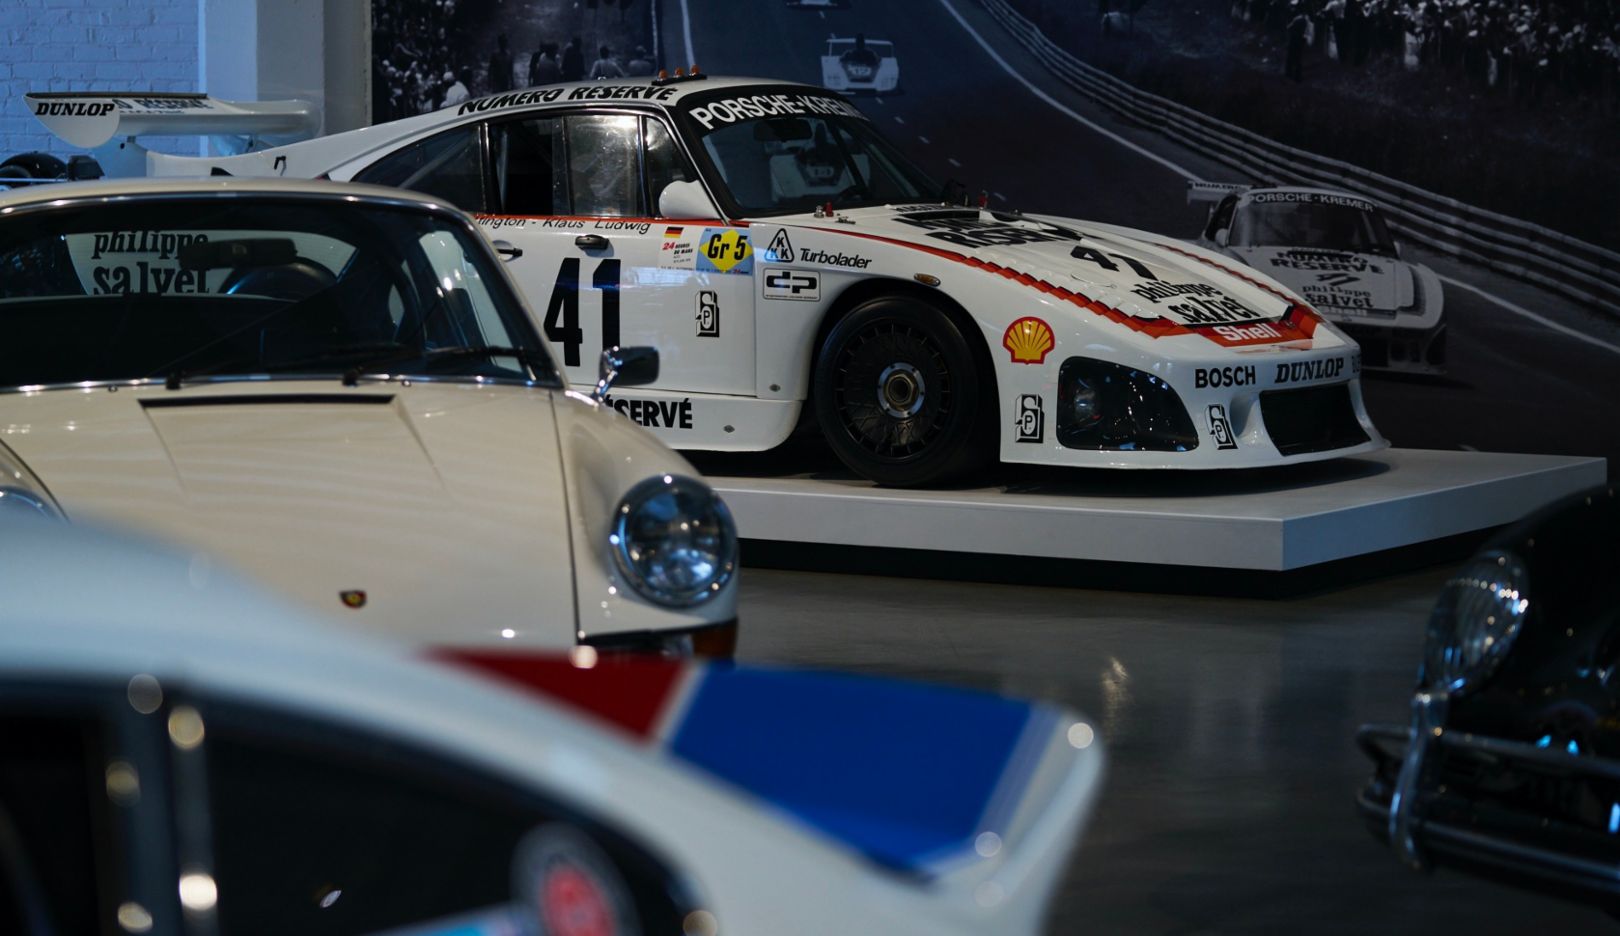 Vista de la «cola de pato»: el 935 no es el único modelo Porsche en el garaje de Meyer.